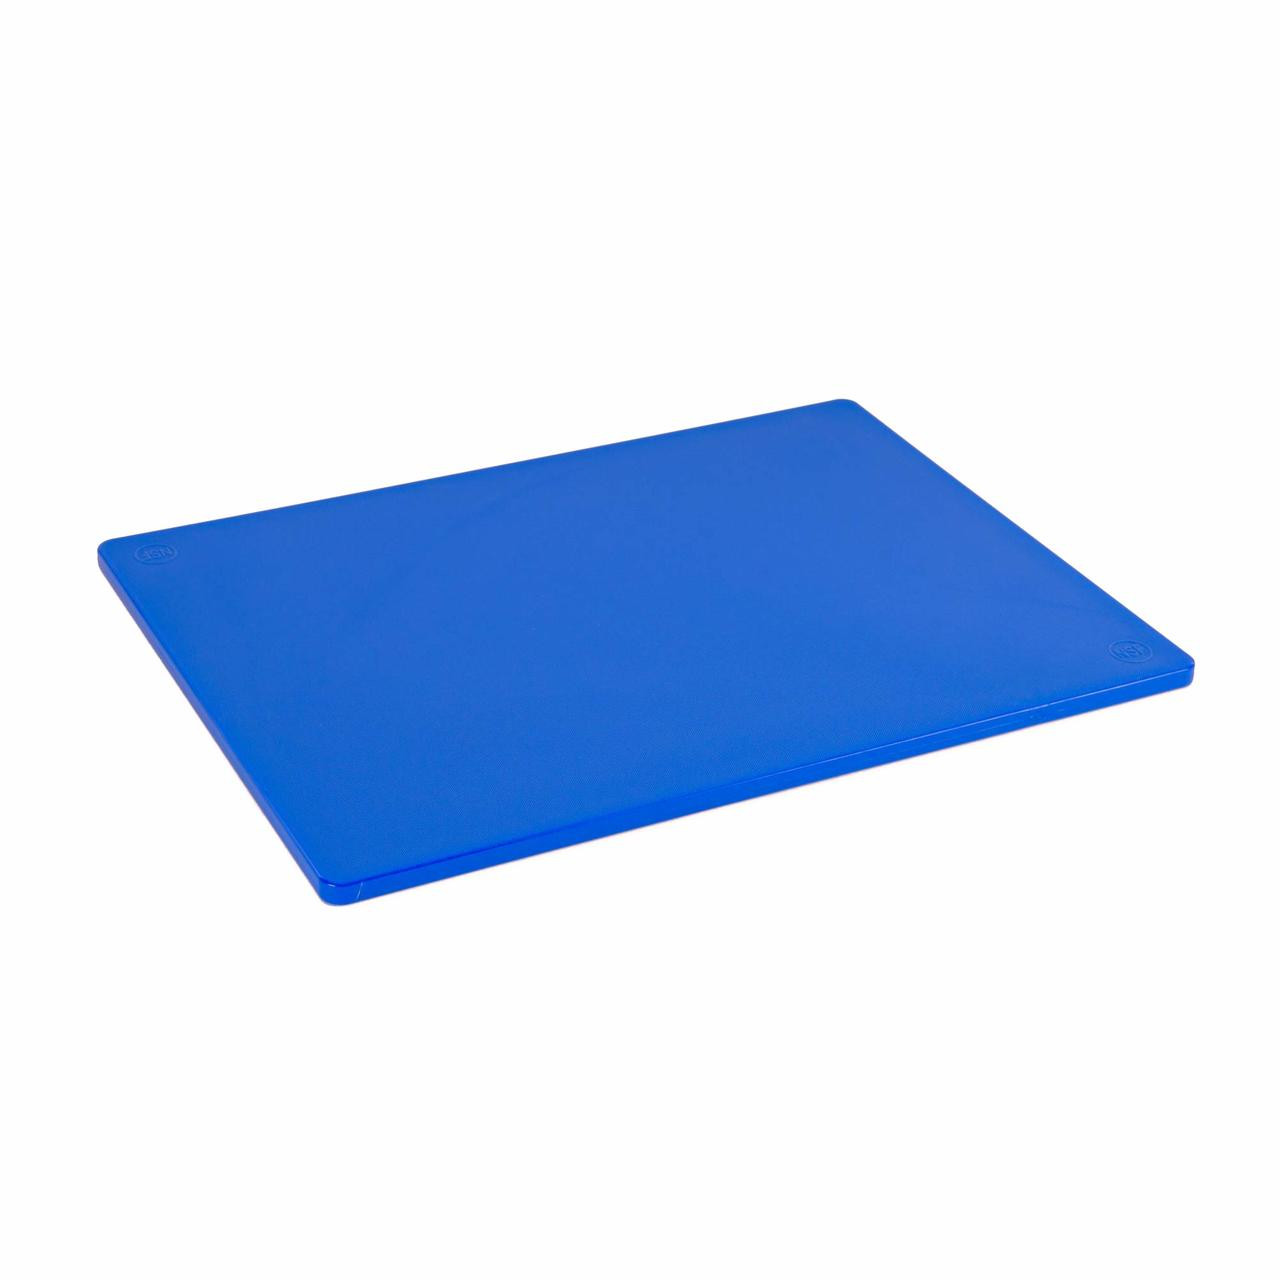 Choice 20 x 15 x 1/2 Red Polyethylene Cutting Board